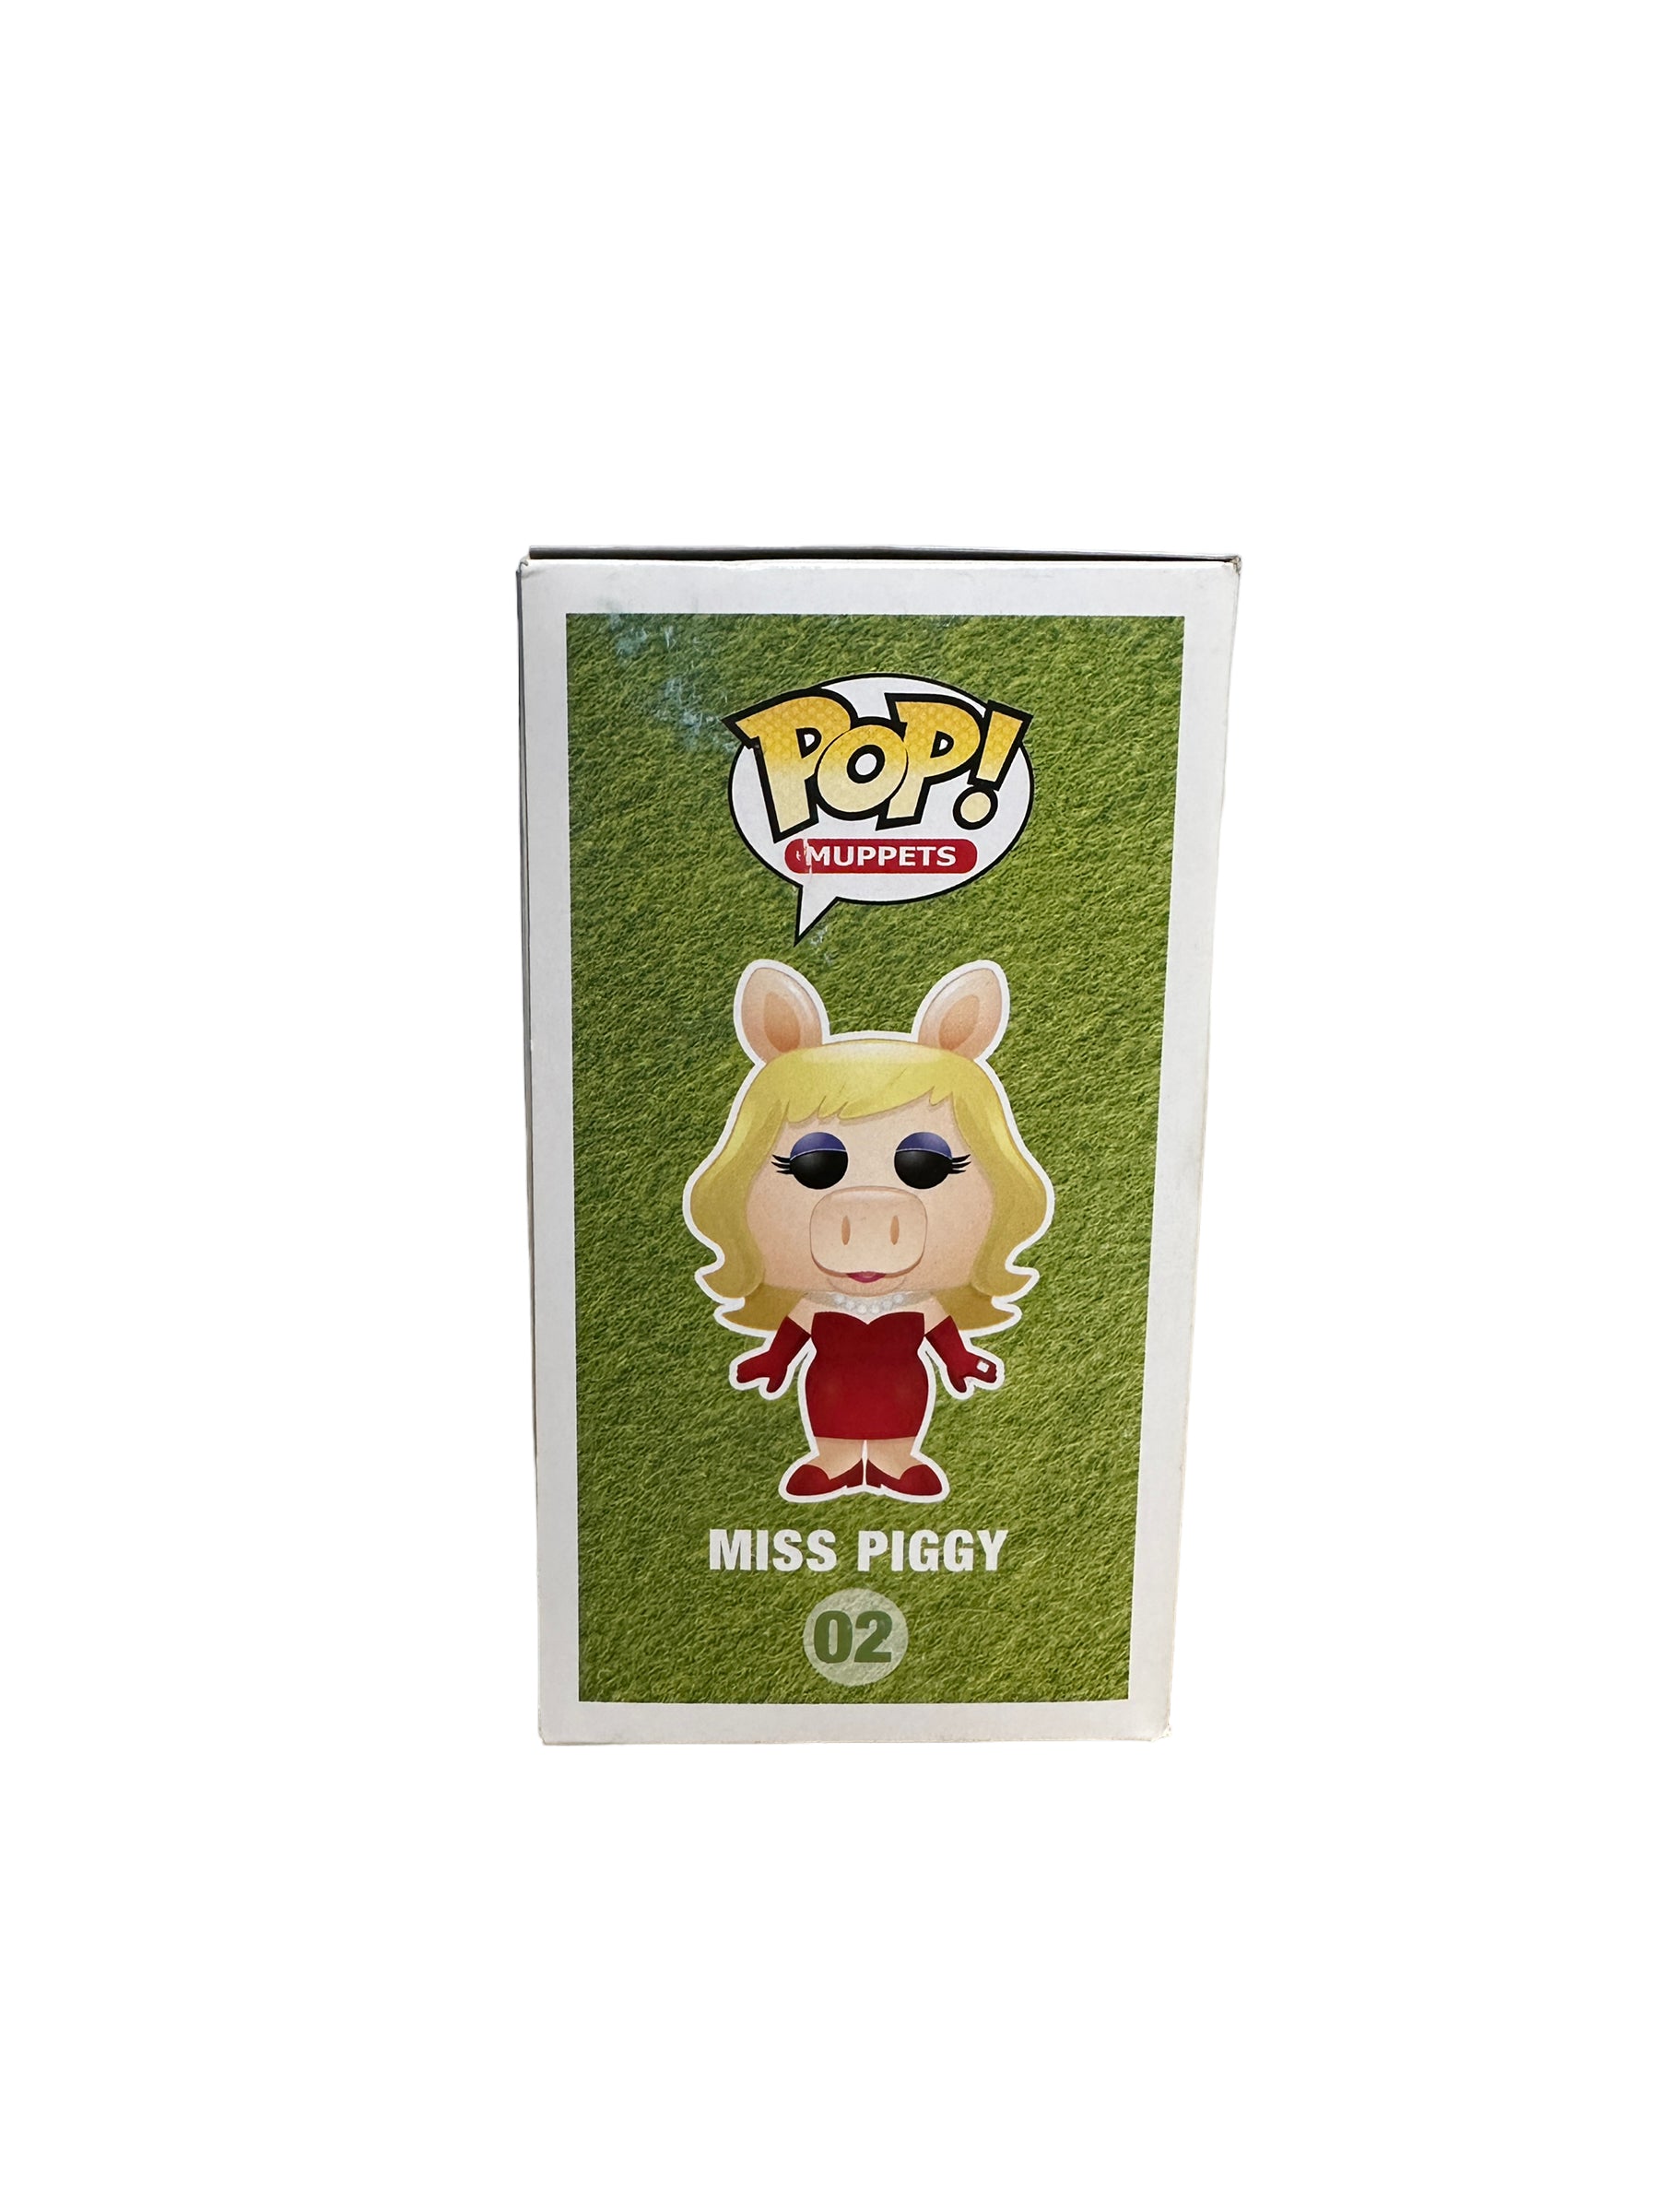 Miss Piggy #02 (Metallic) Funko Pop! - The Muppets - SDCC 2013 Exclusive LE480 Pcs - Condition 7/10